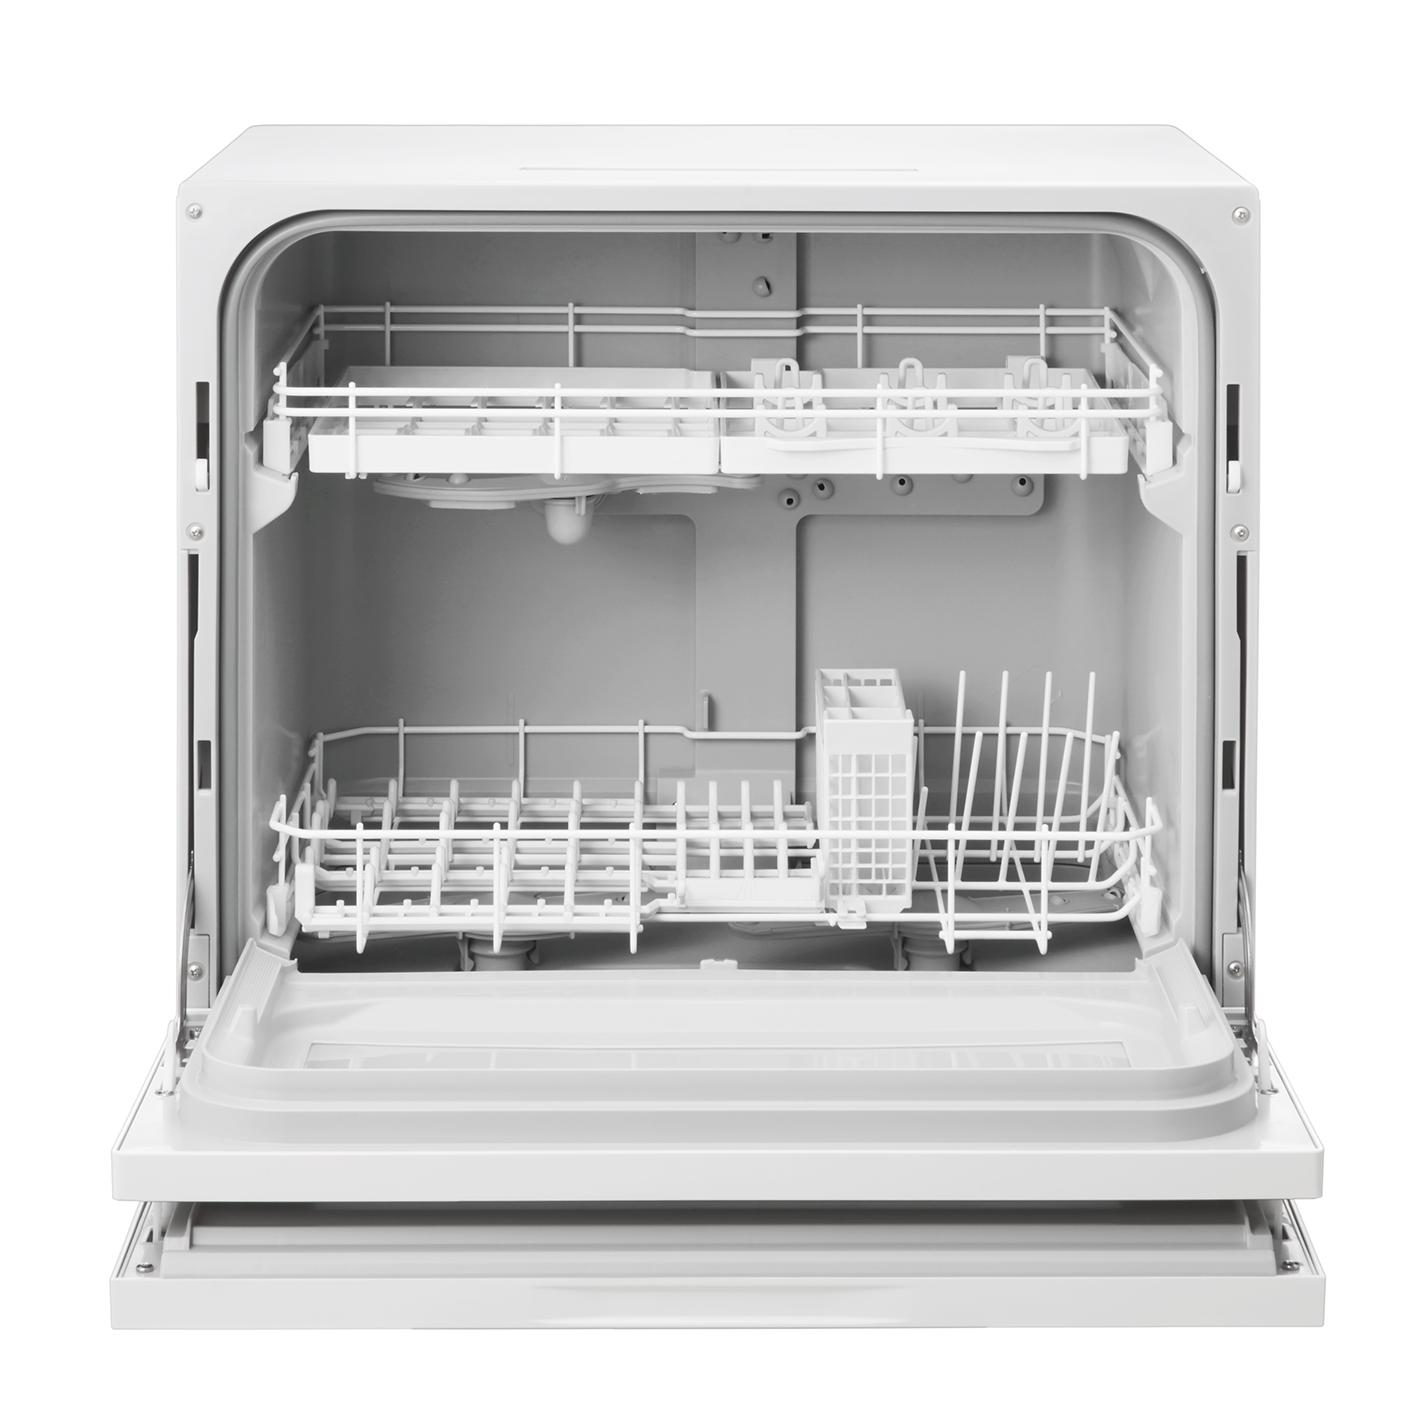 卓上型食器洗い乾燥機 「NP-TH1」を発売 | 個人向け商品 | 製品